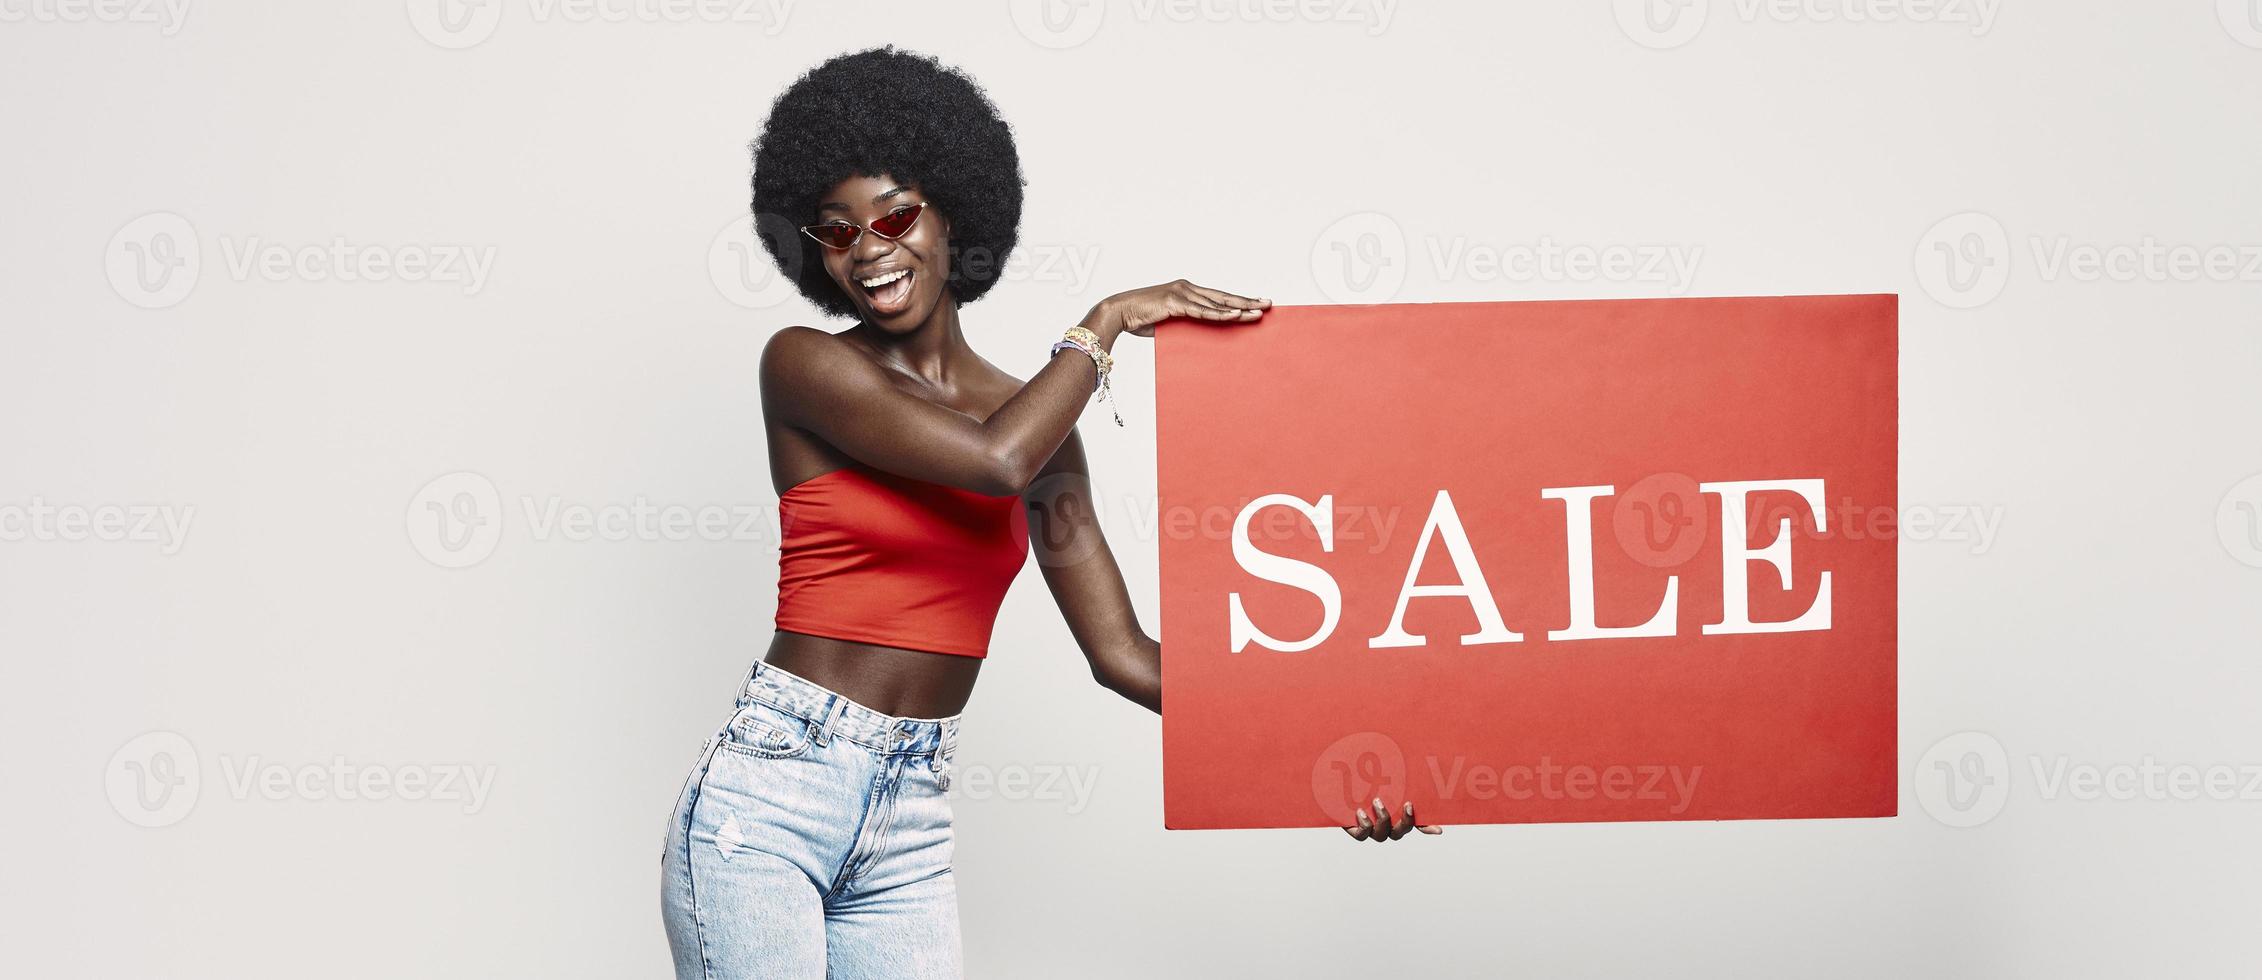 glückliche junge afrikanische frau, die verkaufsfahne hält und lächelt, während sie gegen grauen hintergrund steht foto